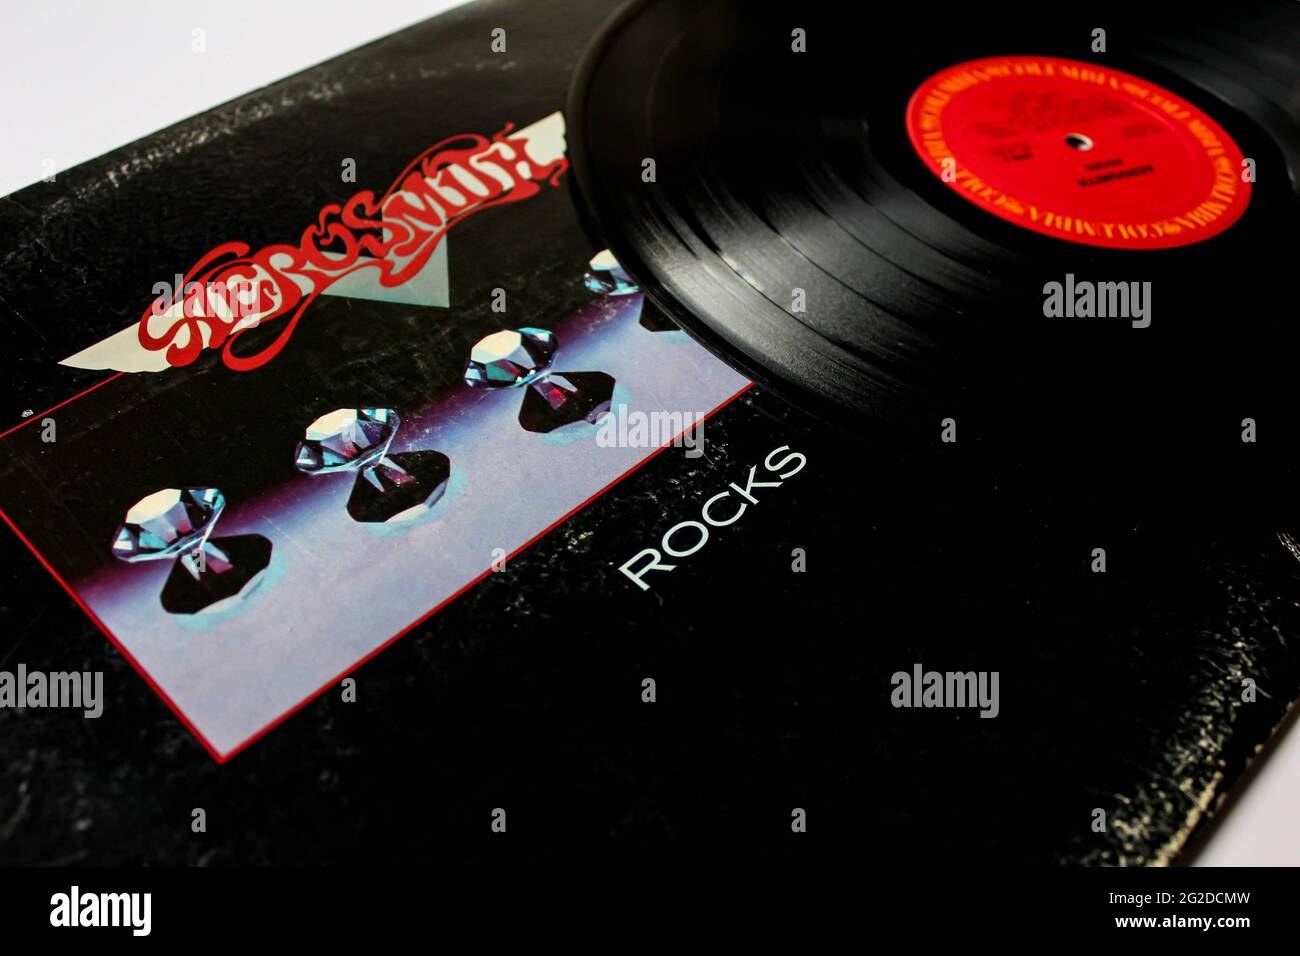 Groupe rock classique, Aerosmith, album de musique sur disque vinyle LP. Intitulé: Couverture de l'album Rocks Banque D'Images